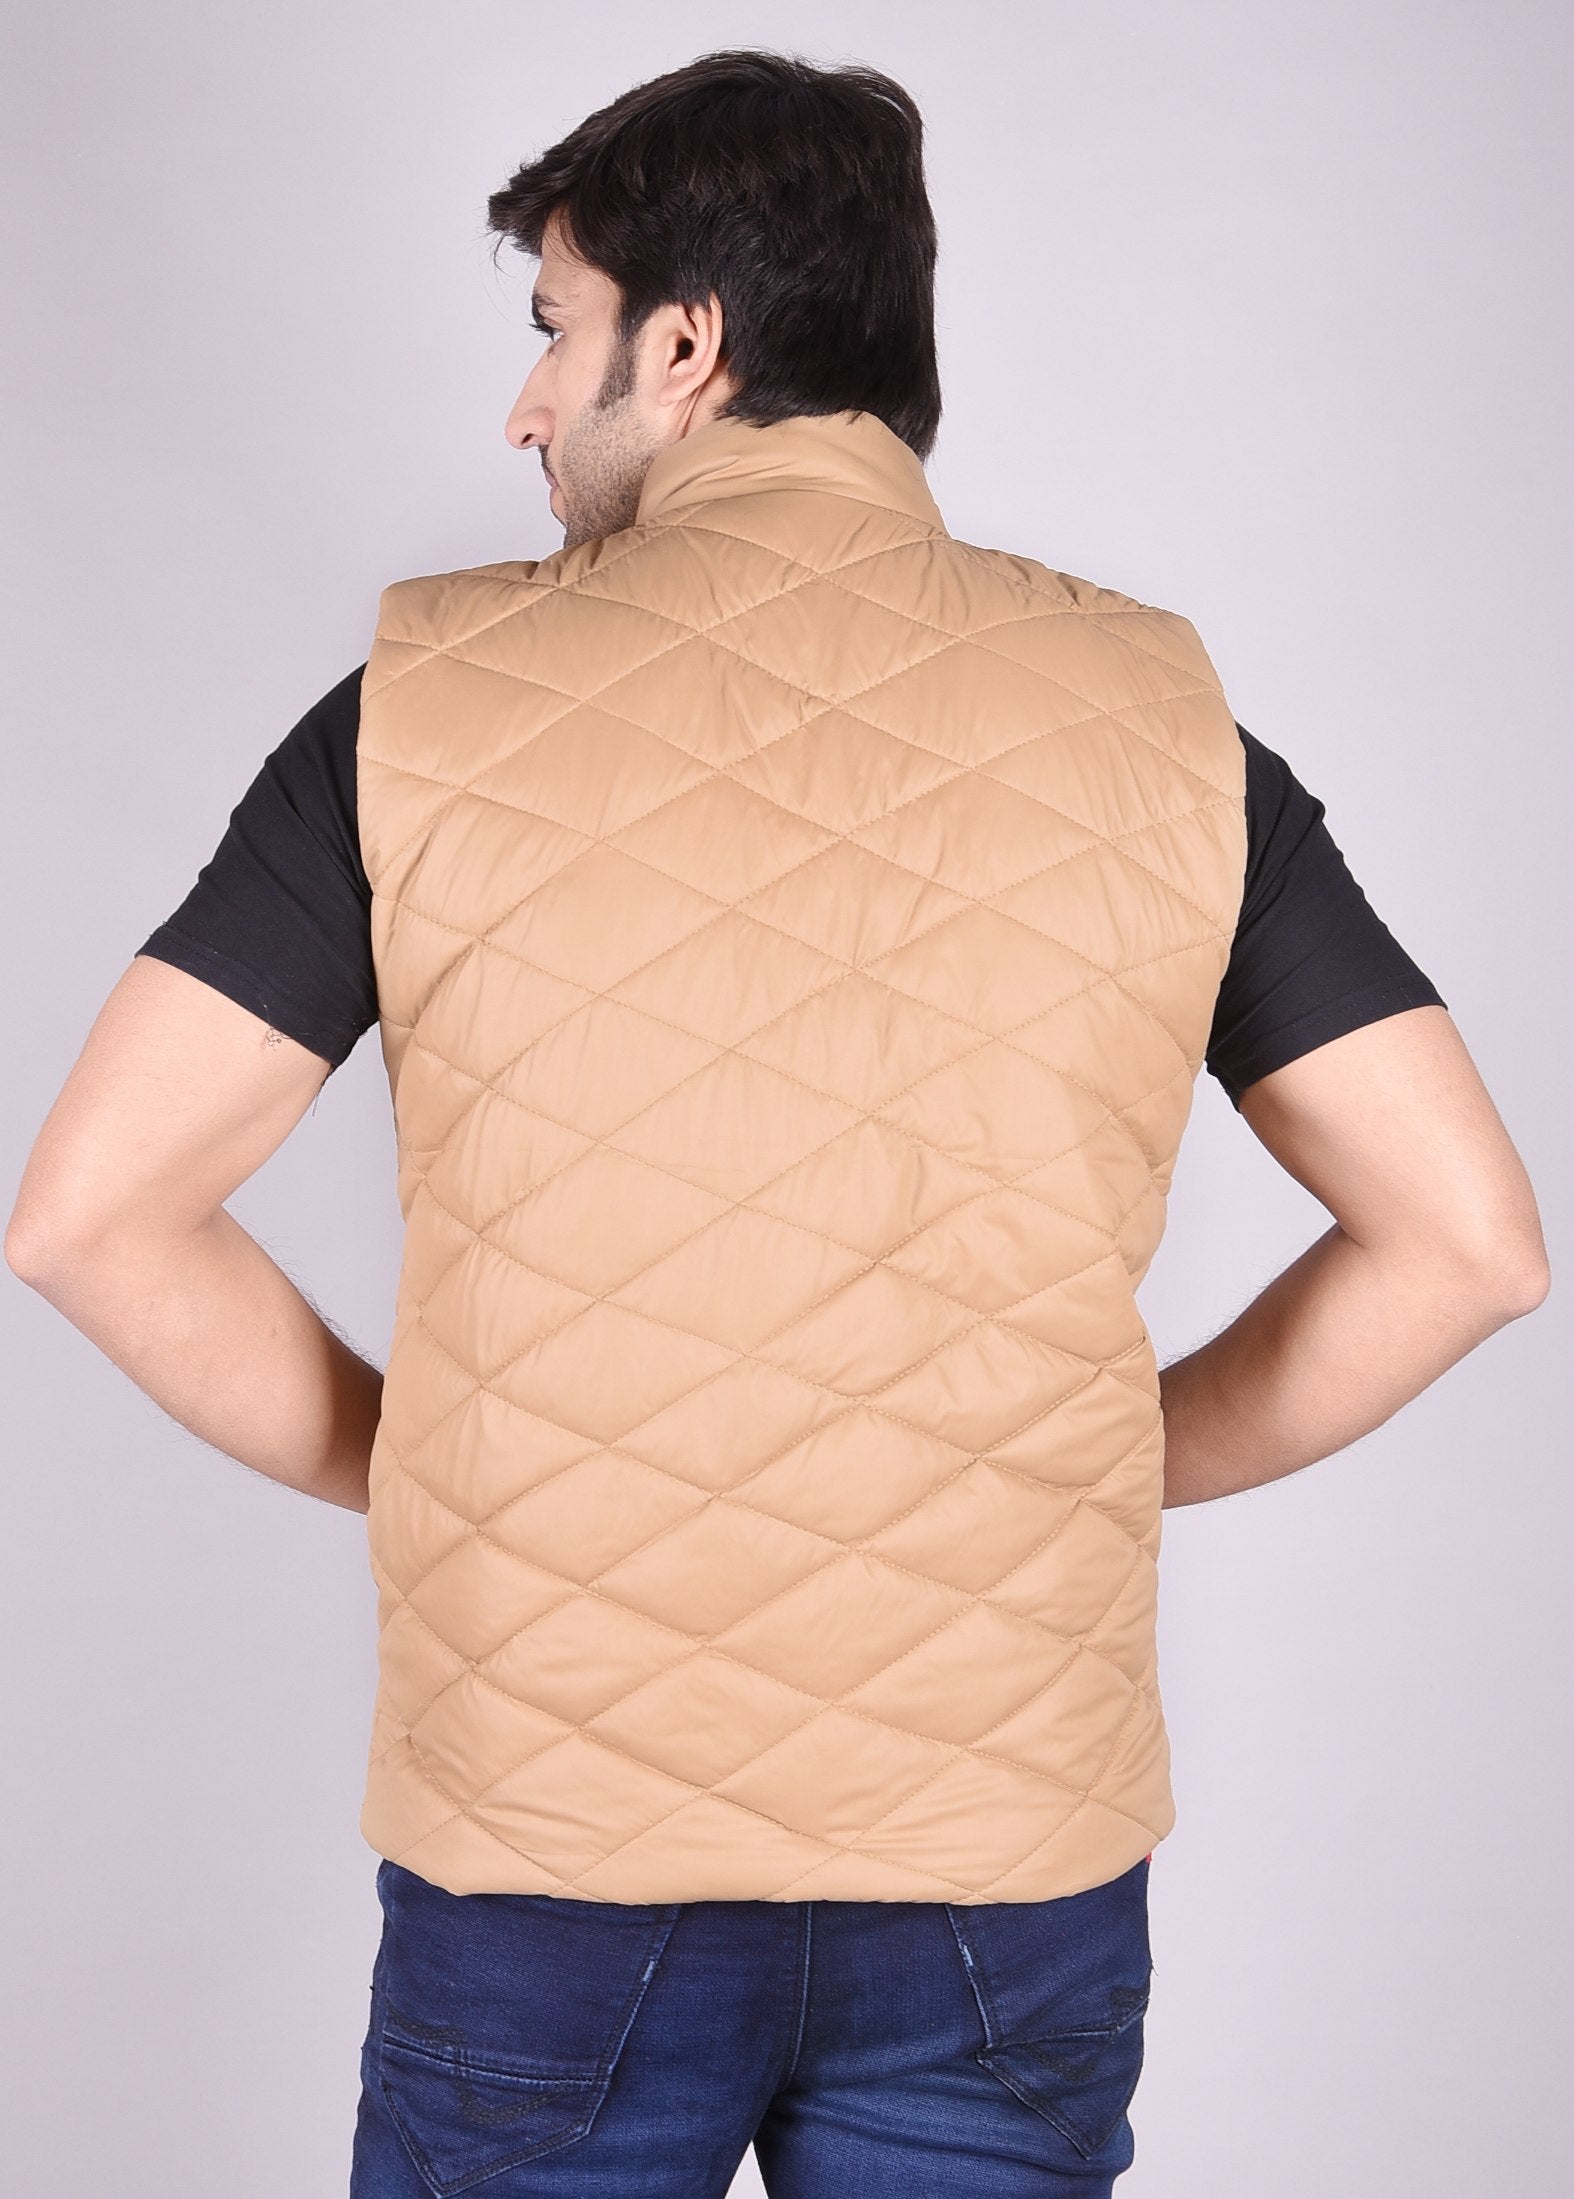 Half Jacket For Mens - Buy Half Jacket For Mens online at Best Prices in  India | Flipkart.com